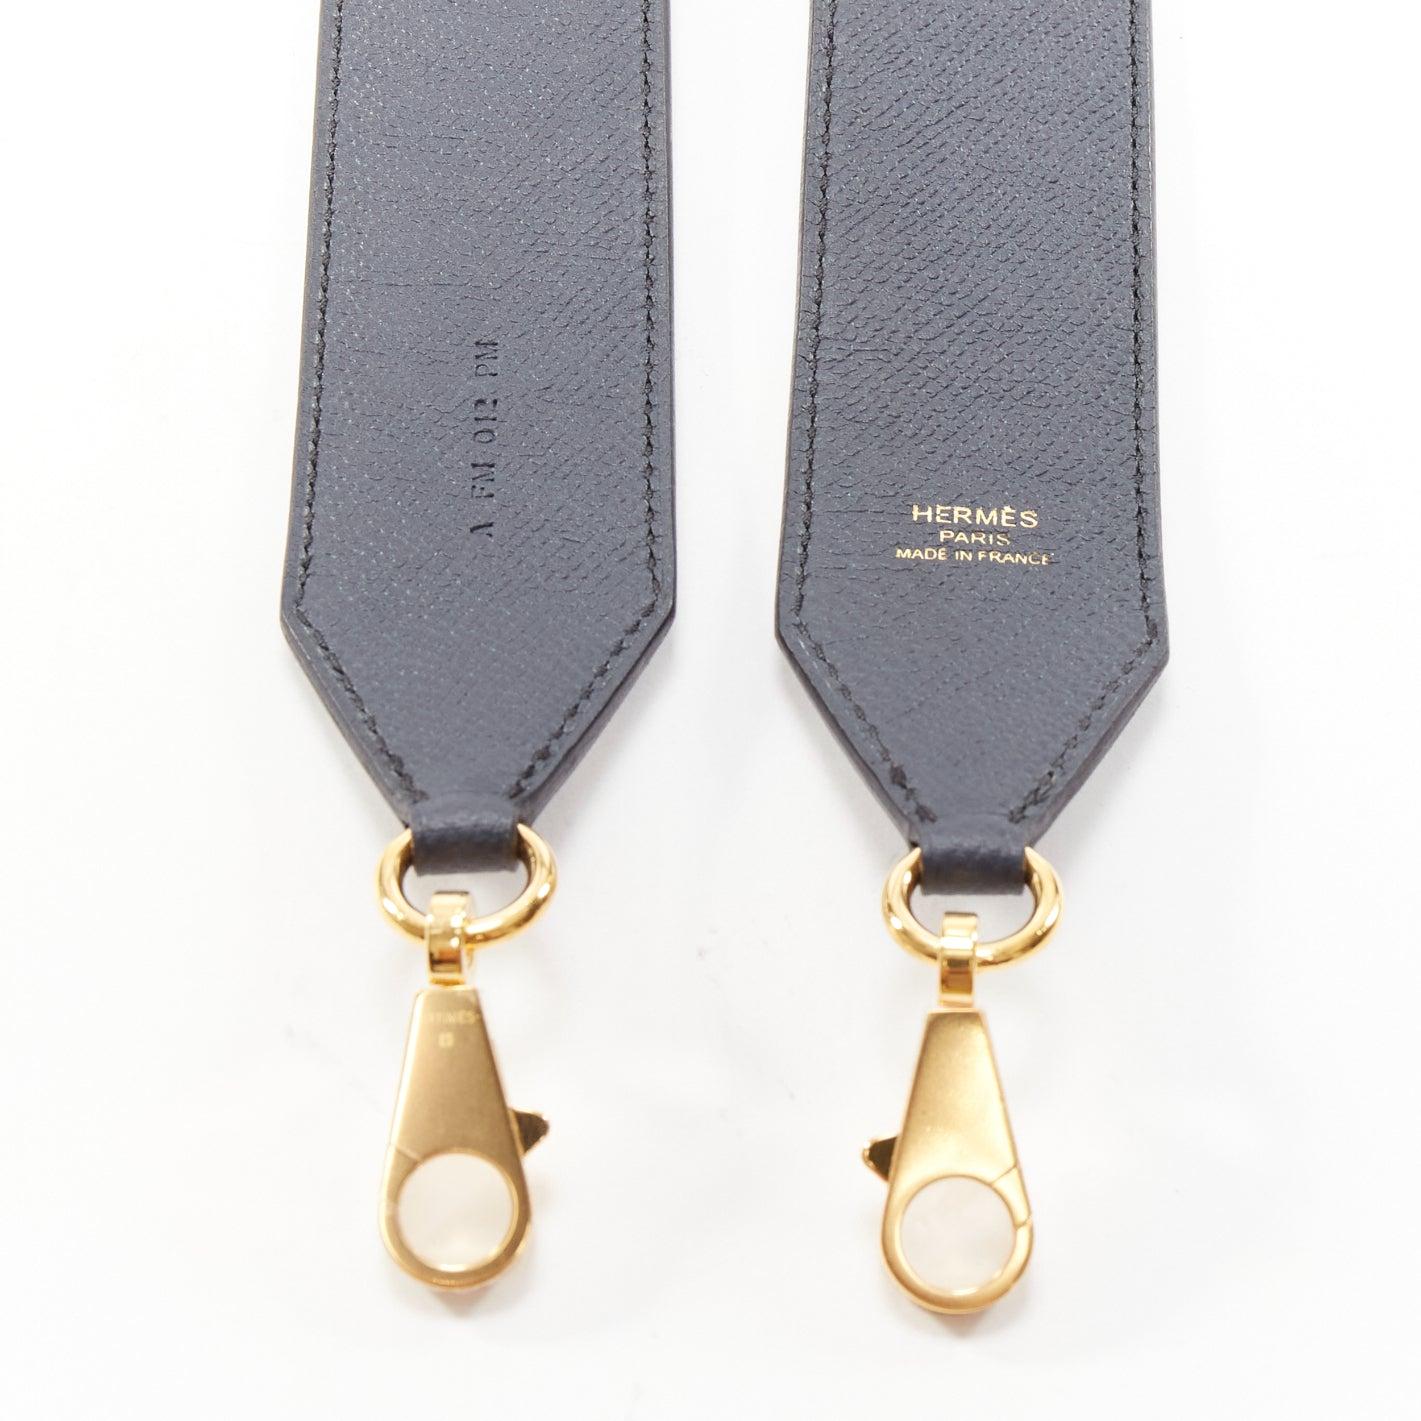 HERMES Sangle 40 orange navy woven leather gold hardware bag strap For Sale 2